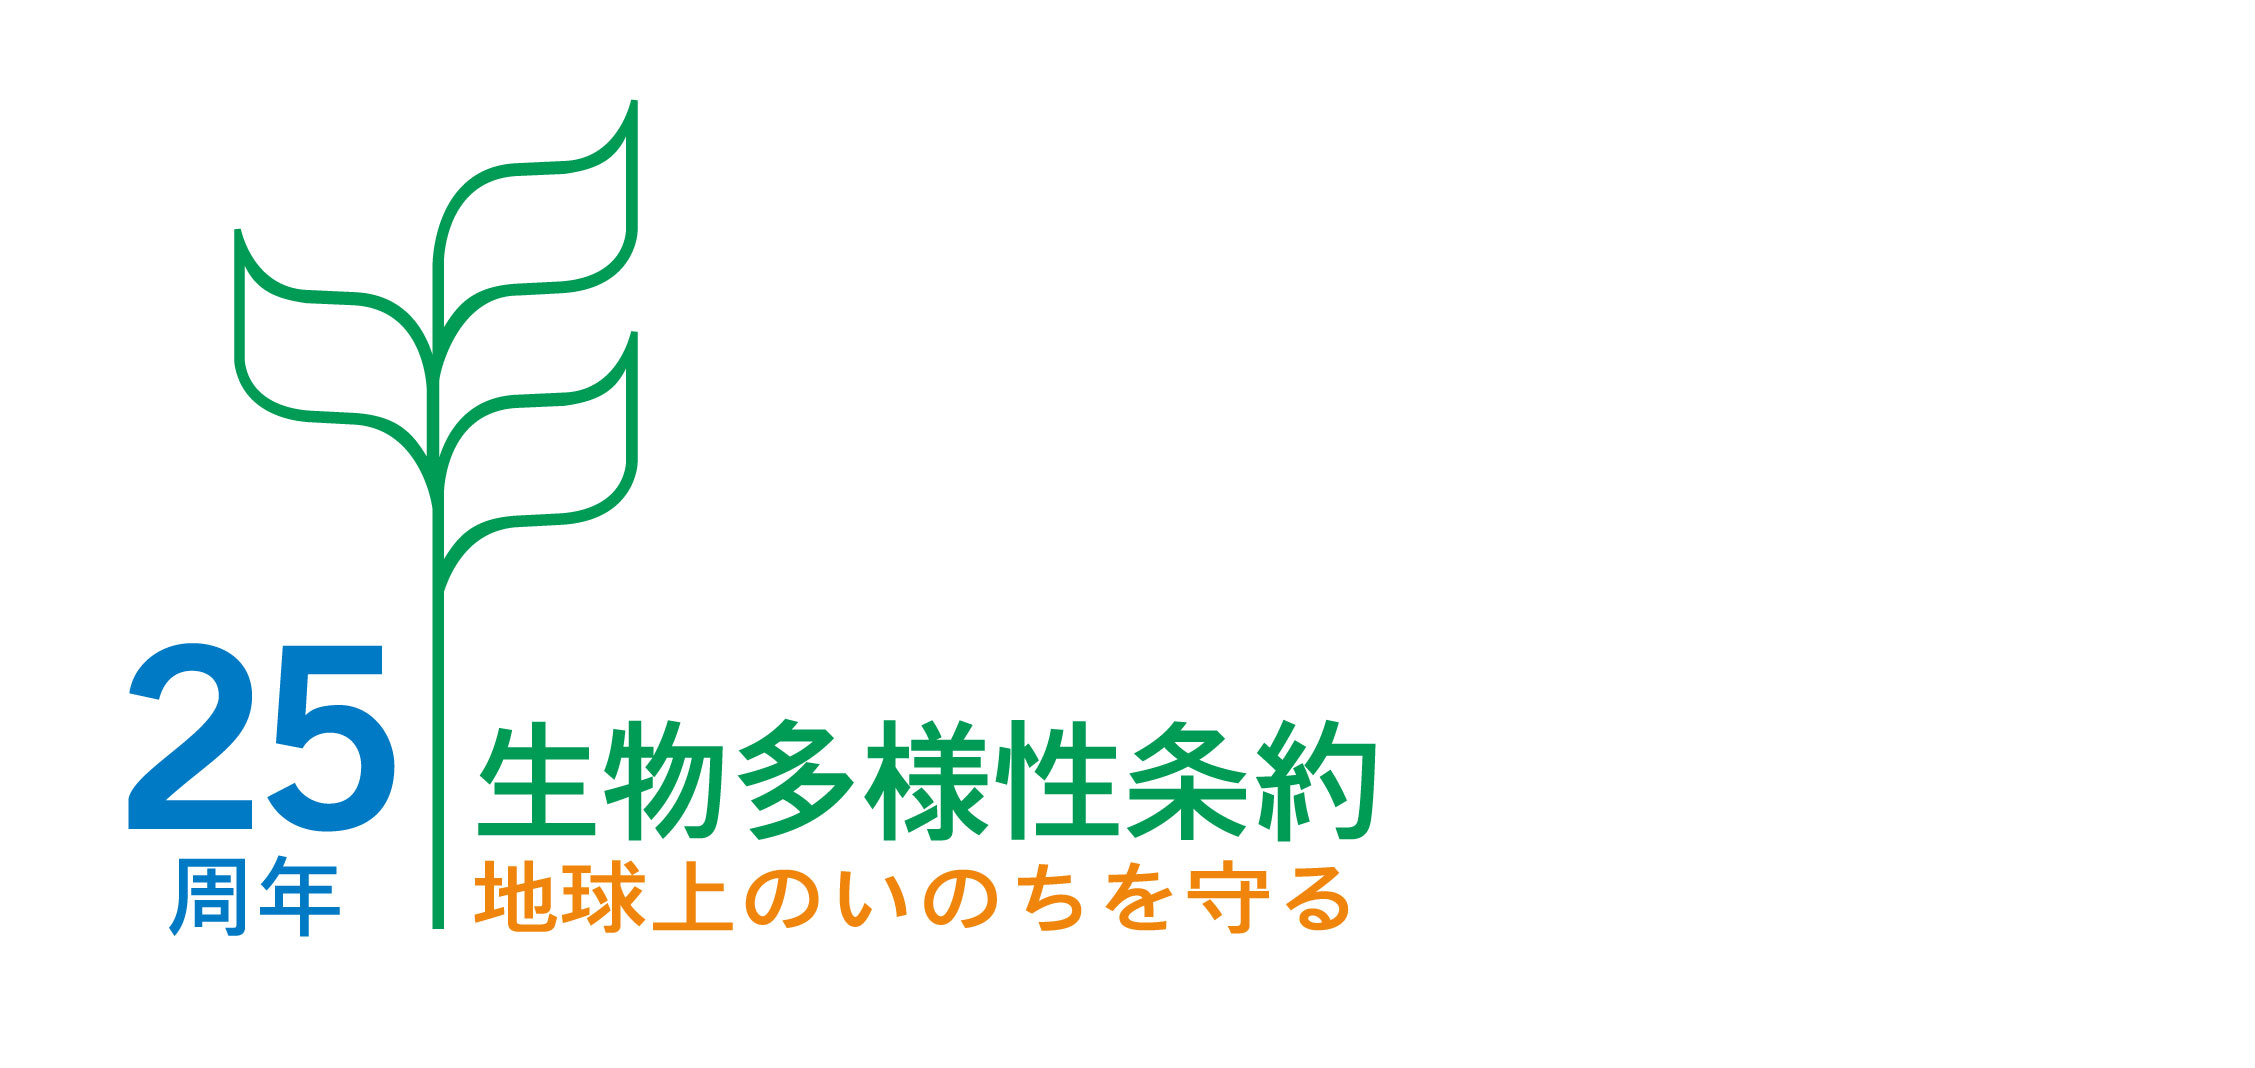 日本語版ロゴマーク